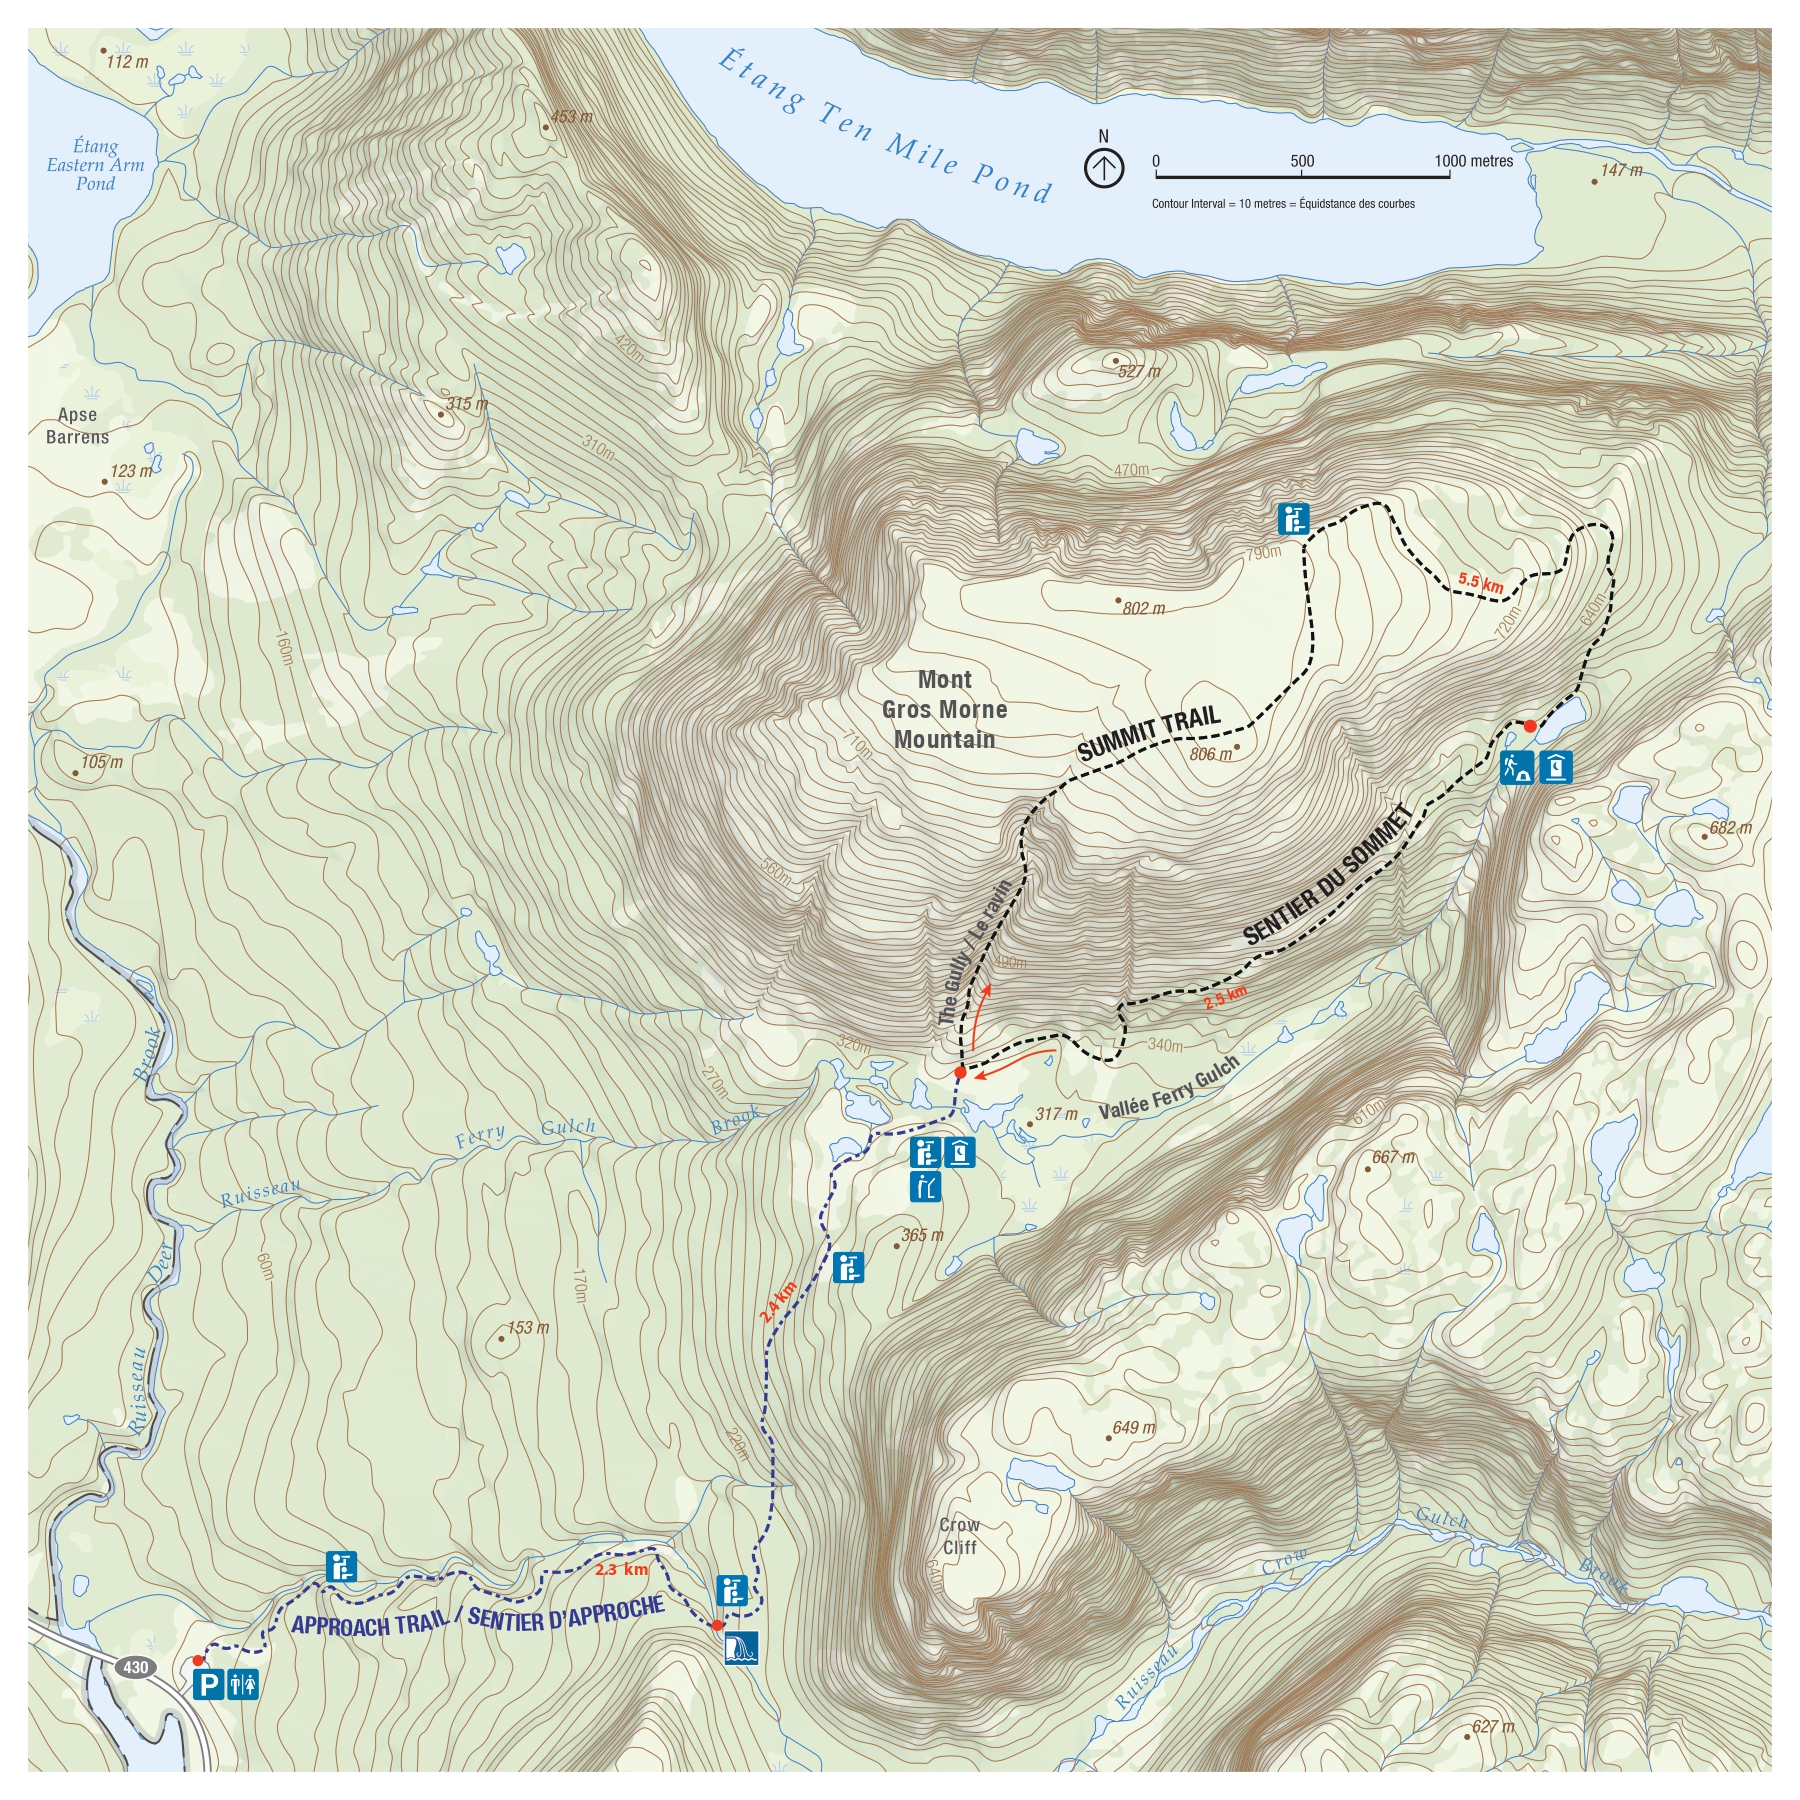 Cliquez pour télécharger la carte des montagnes de Gros Morne